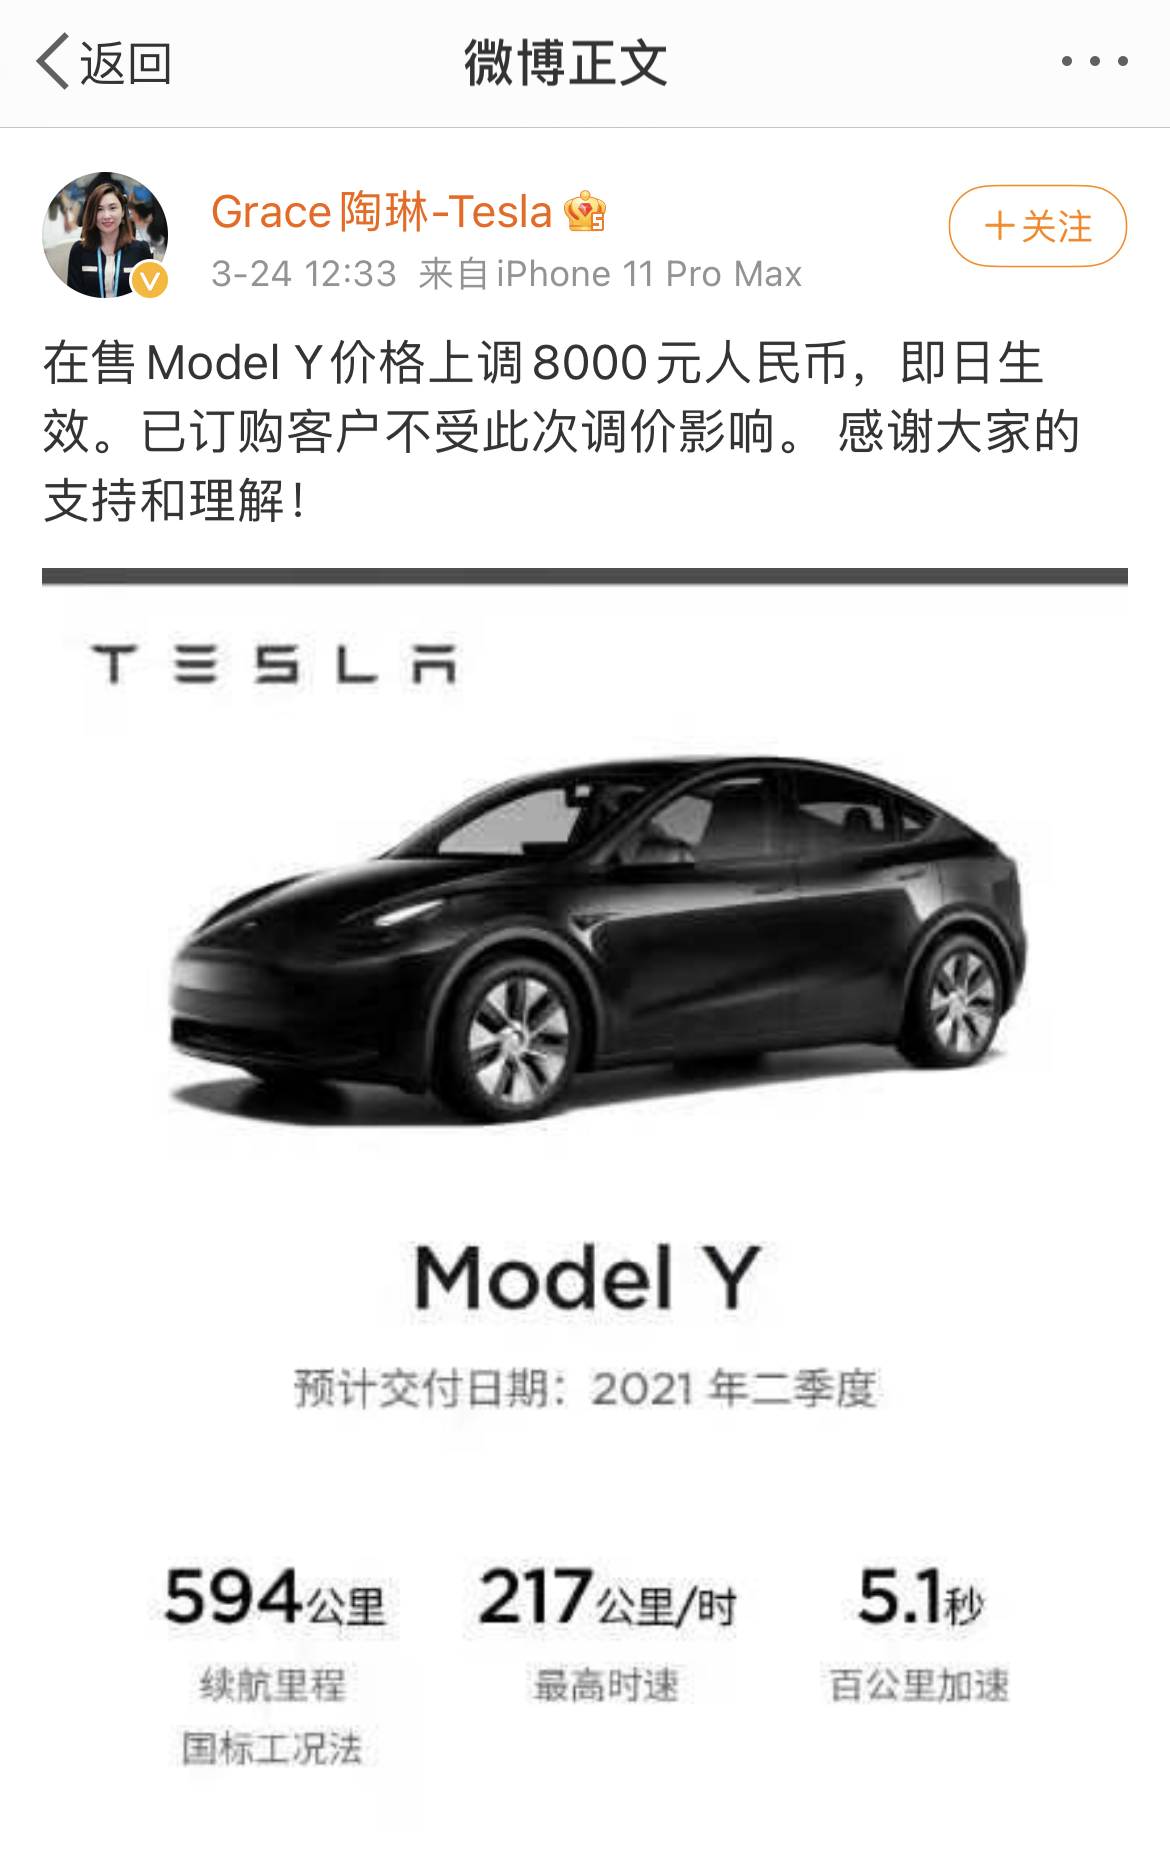 特斯拉奇幻紫版 Model 3 和 Model X 已登陆北京等地 - 新出行